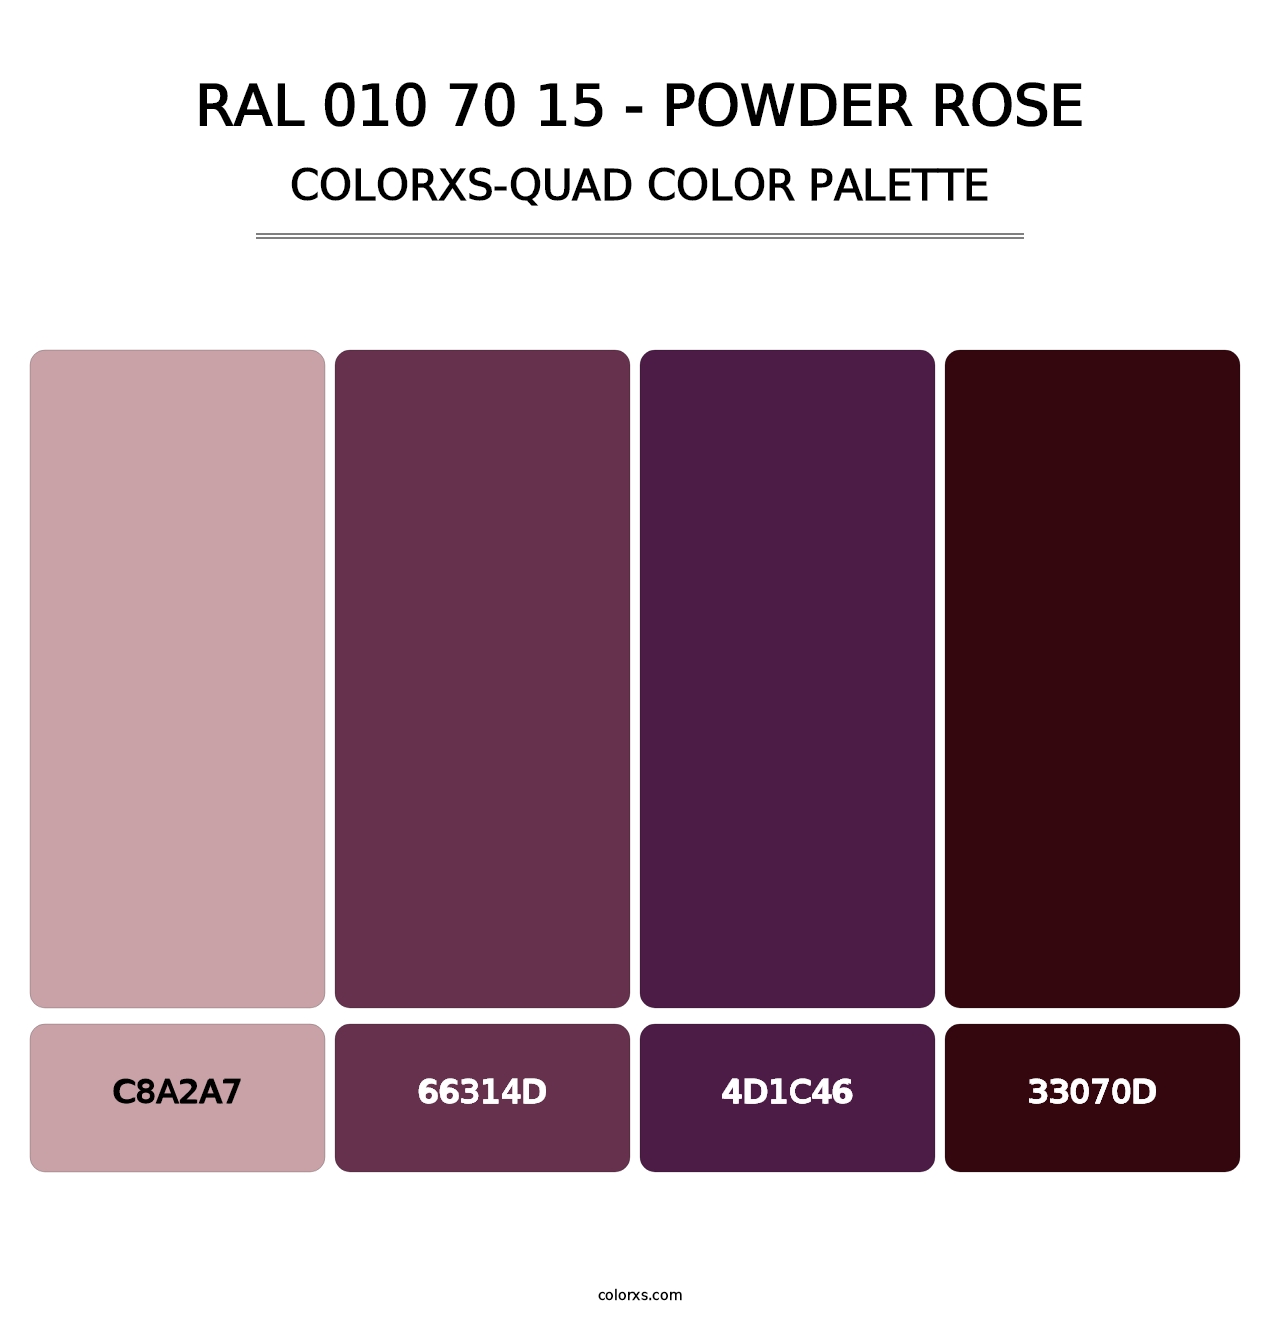 RAL 010 70 15 - Powder Rose - Colorxs Quad Palette